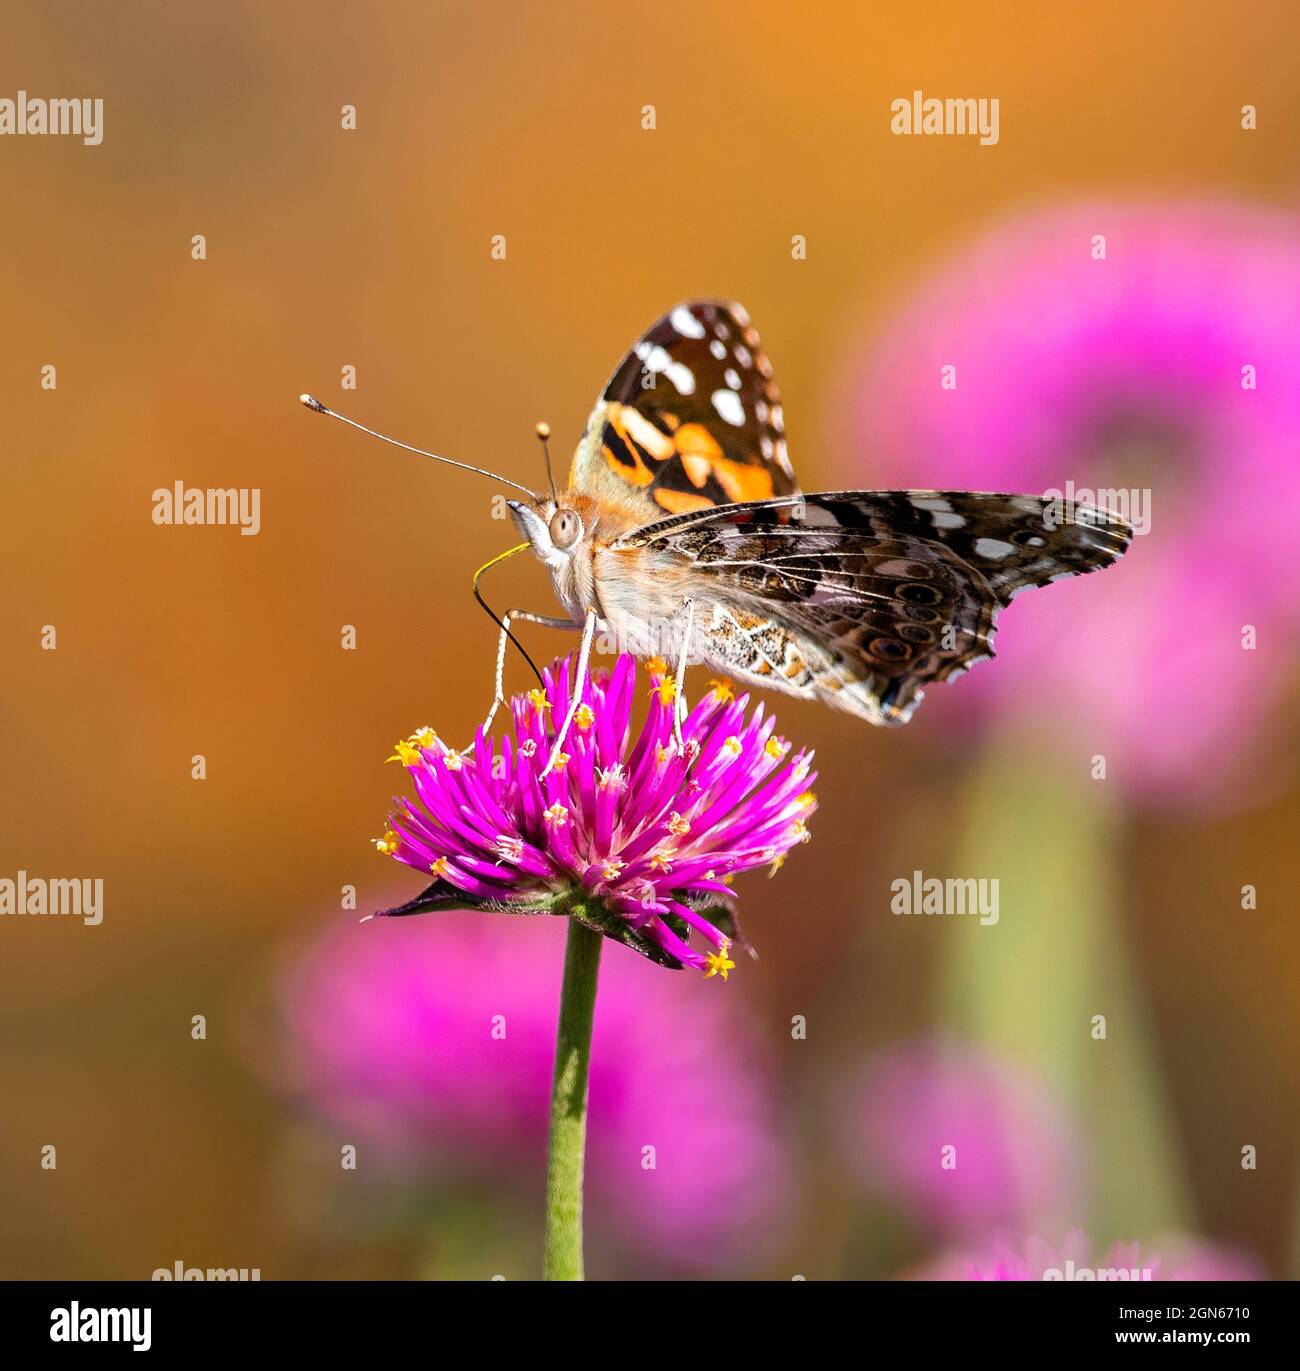 Una mariposa de Dama pintada con una lengua larga salpicada de polen amarillo, sentada sobre una flor de fuegos artificiales de color rosa intenso (Gomphrena globosa). Foto de stock